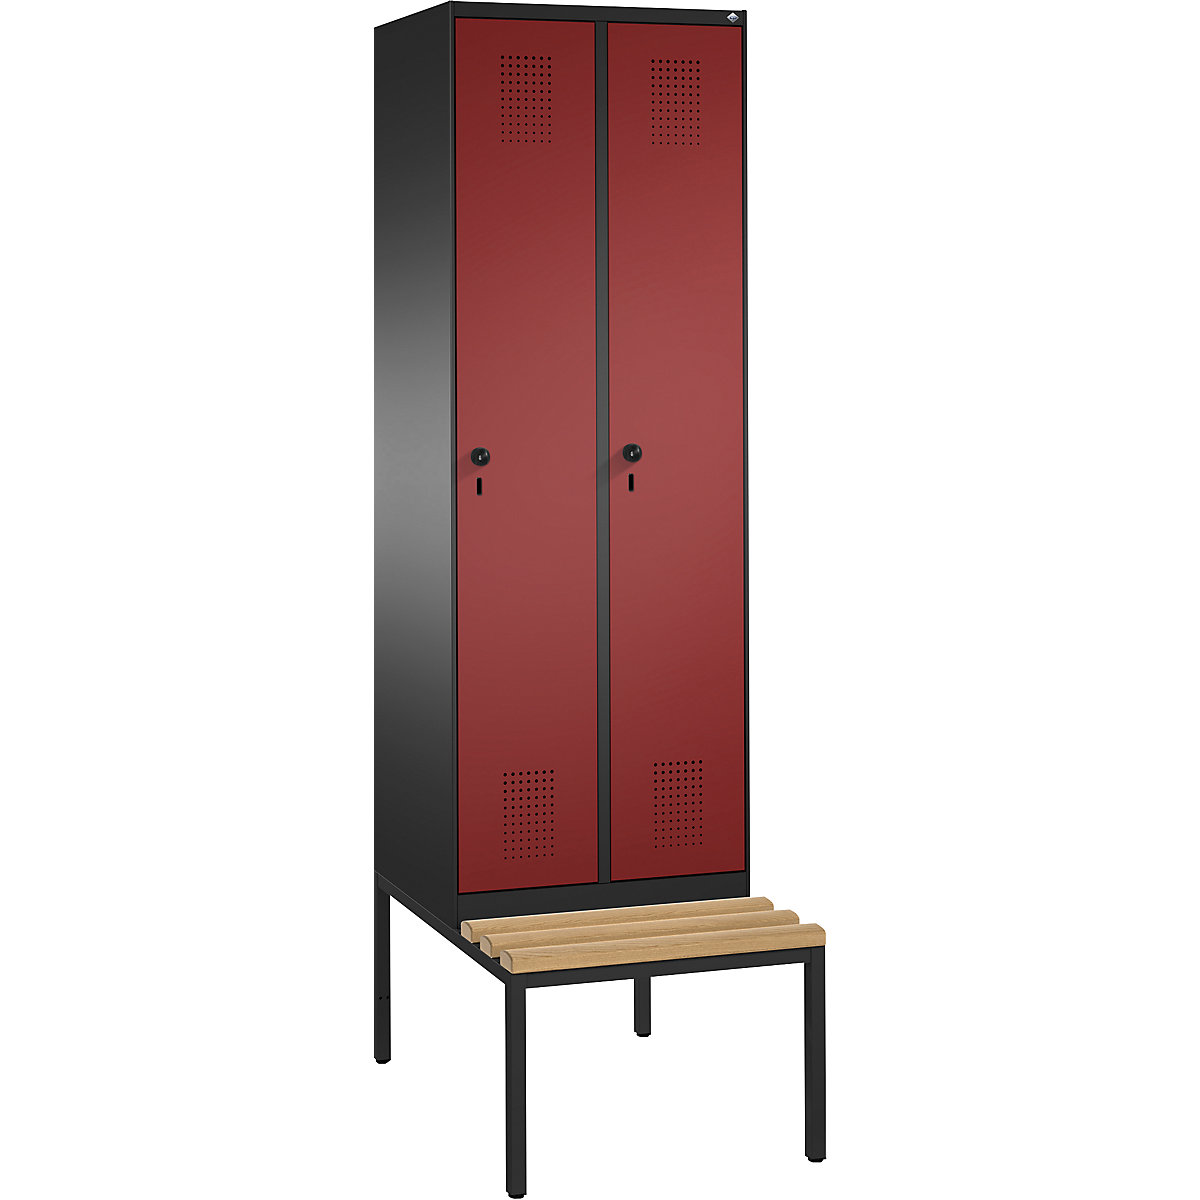 Garderobna omara EVOLO, s klopjo – C+P, 2 razdelka, širina razdelka 300 mm, črno siva / rubinasto rdeča-4